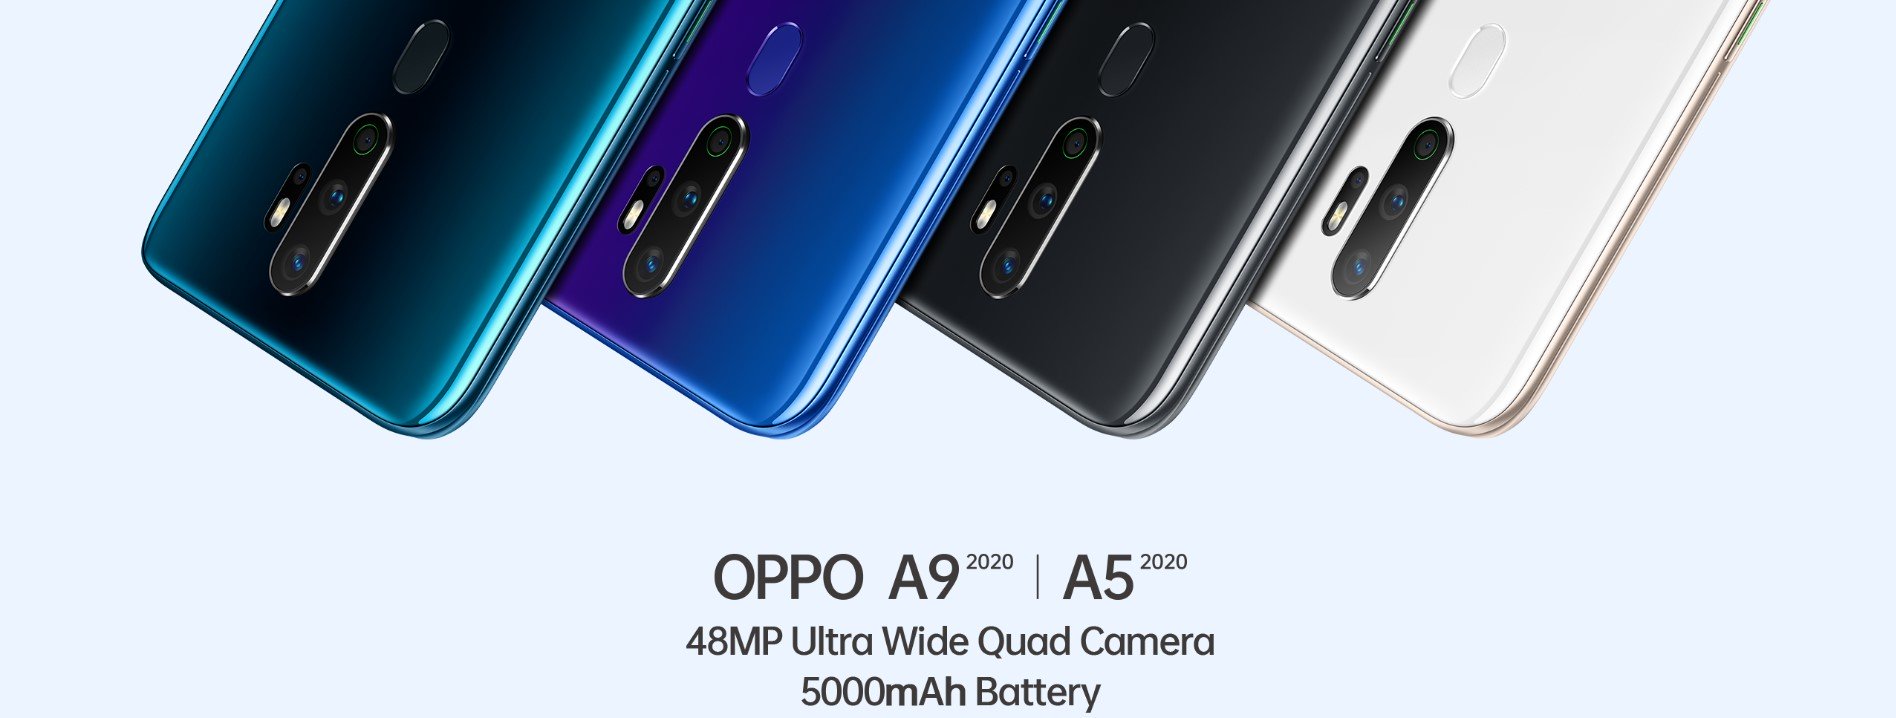 OPPO A5 2020 - promocja w Orange